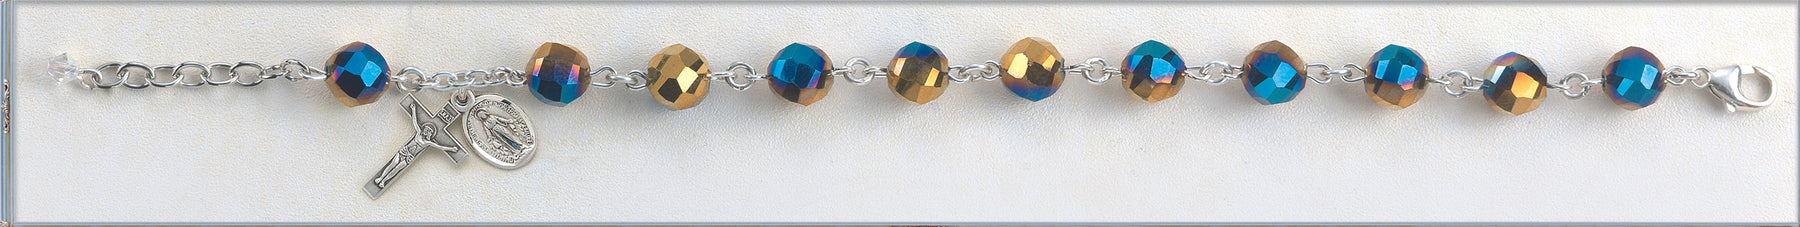 Metallic Gold Tin Cut Crystal Bead and Bracelet